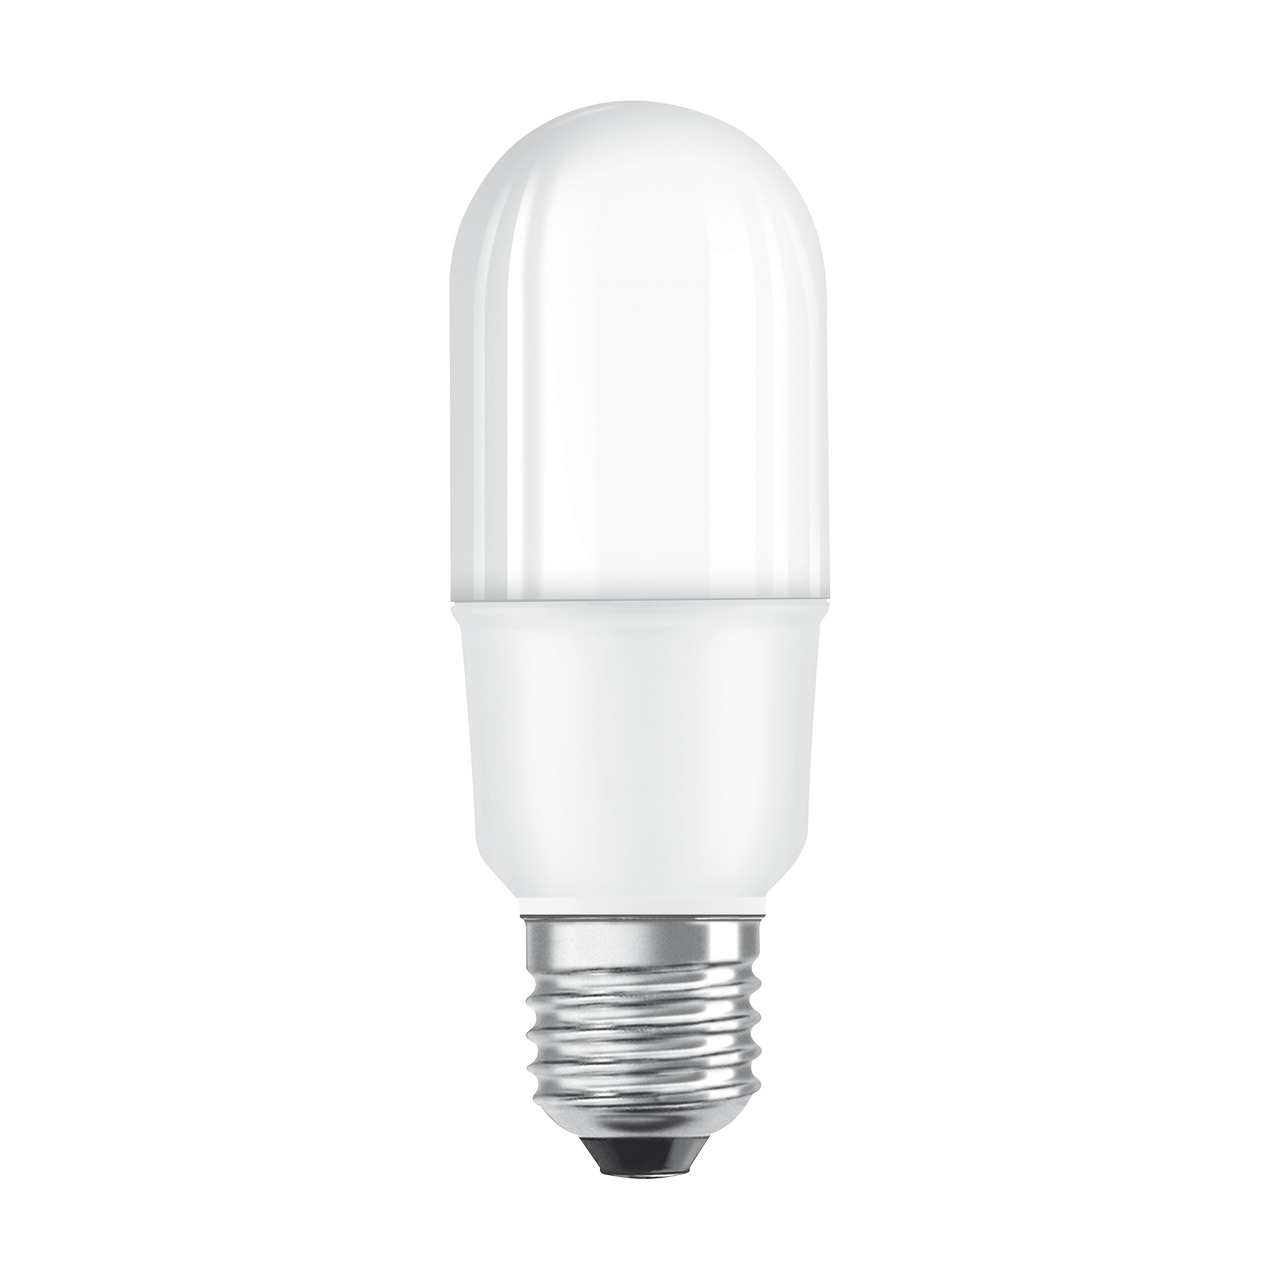 OSRAM LED STAR 9-W-LED-Lampe E27- warmweiss- schlanke Ausführung- Ersatz für 75-W-Glühlampen unter Beleuchtung